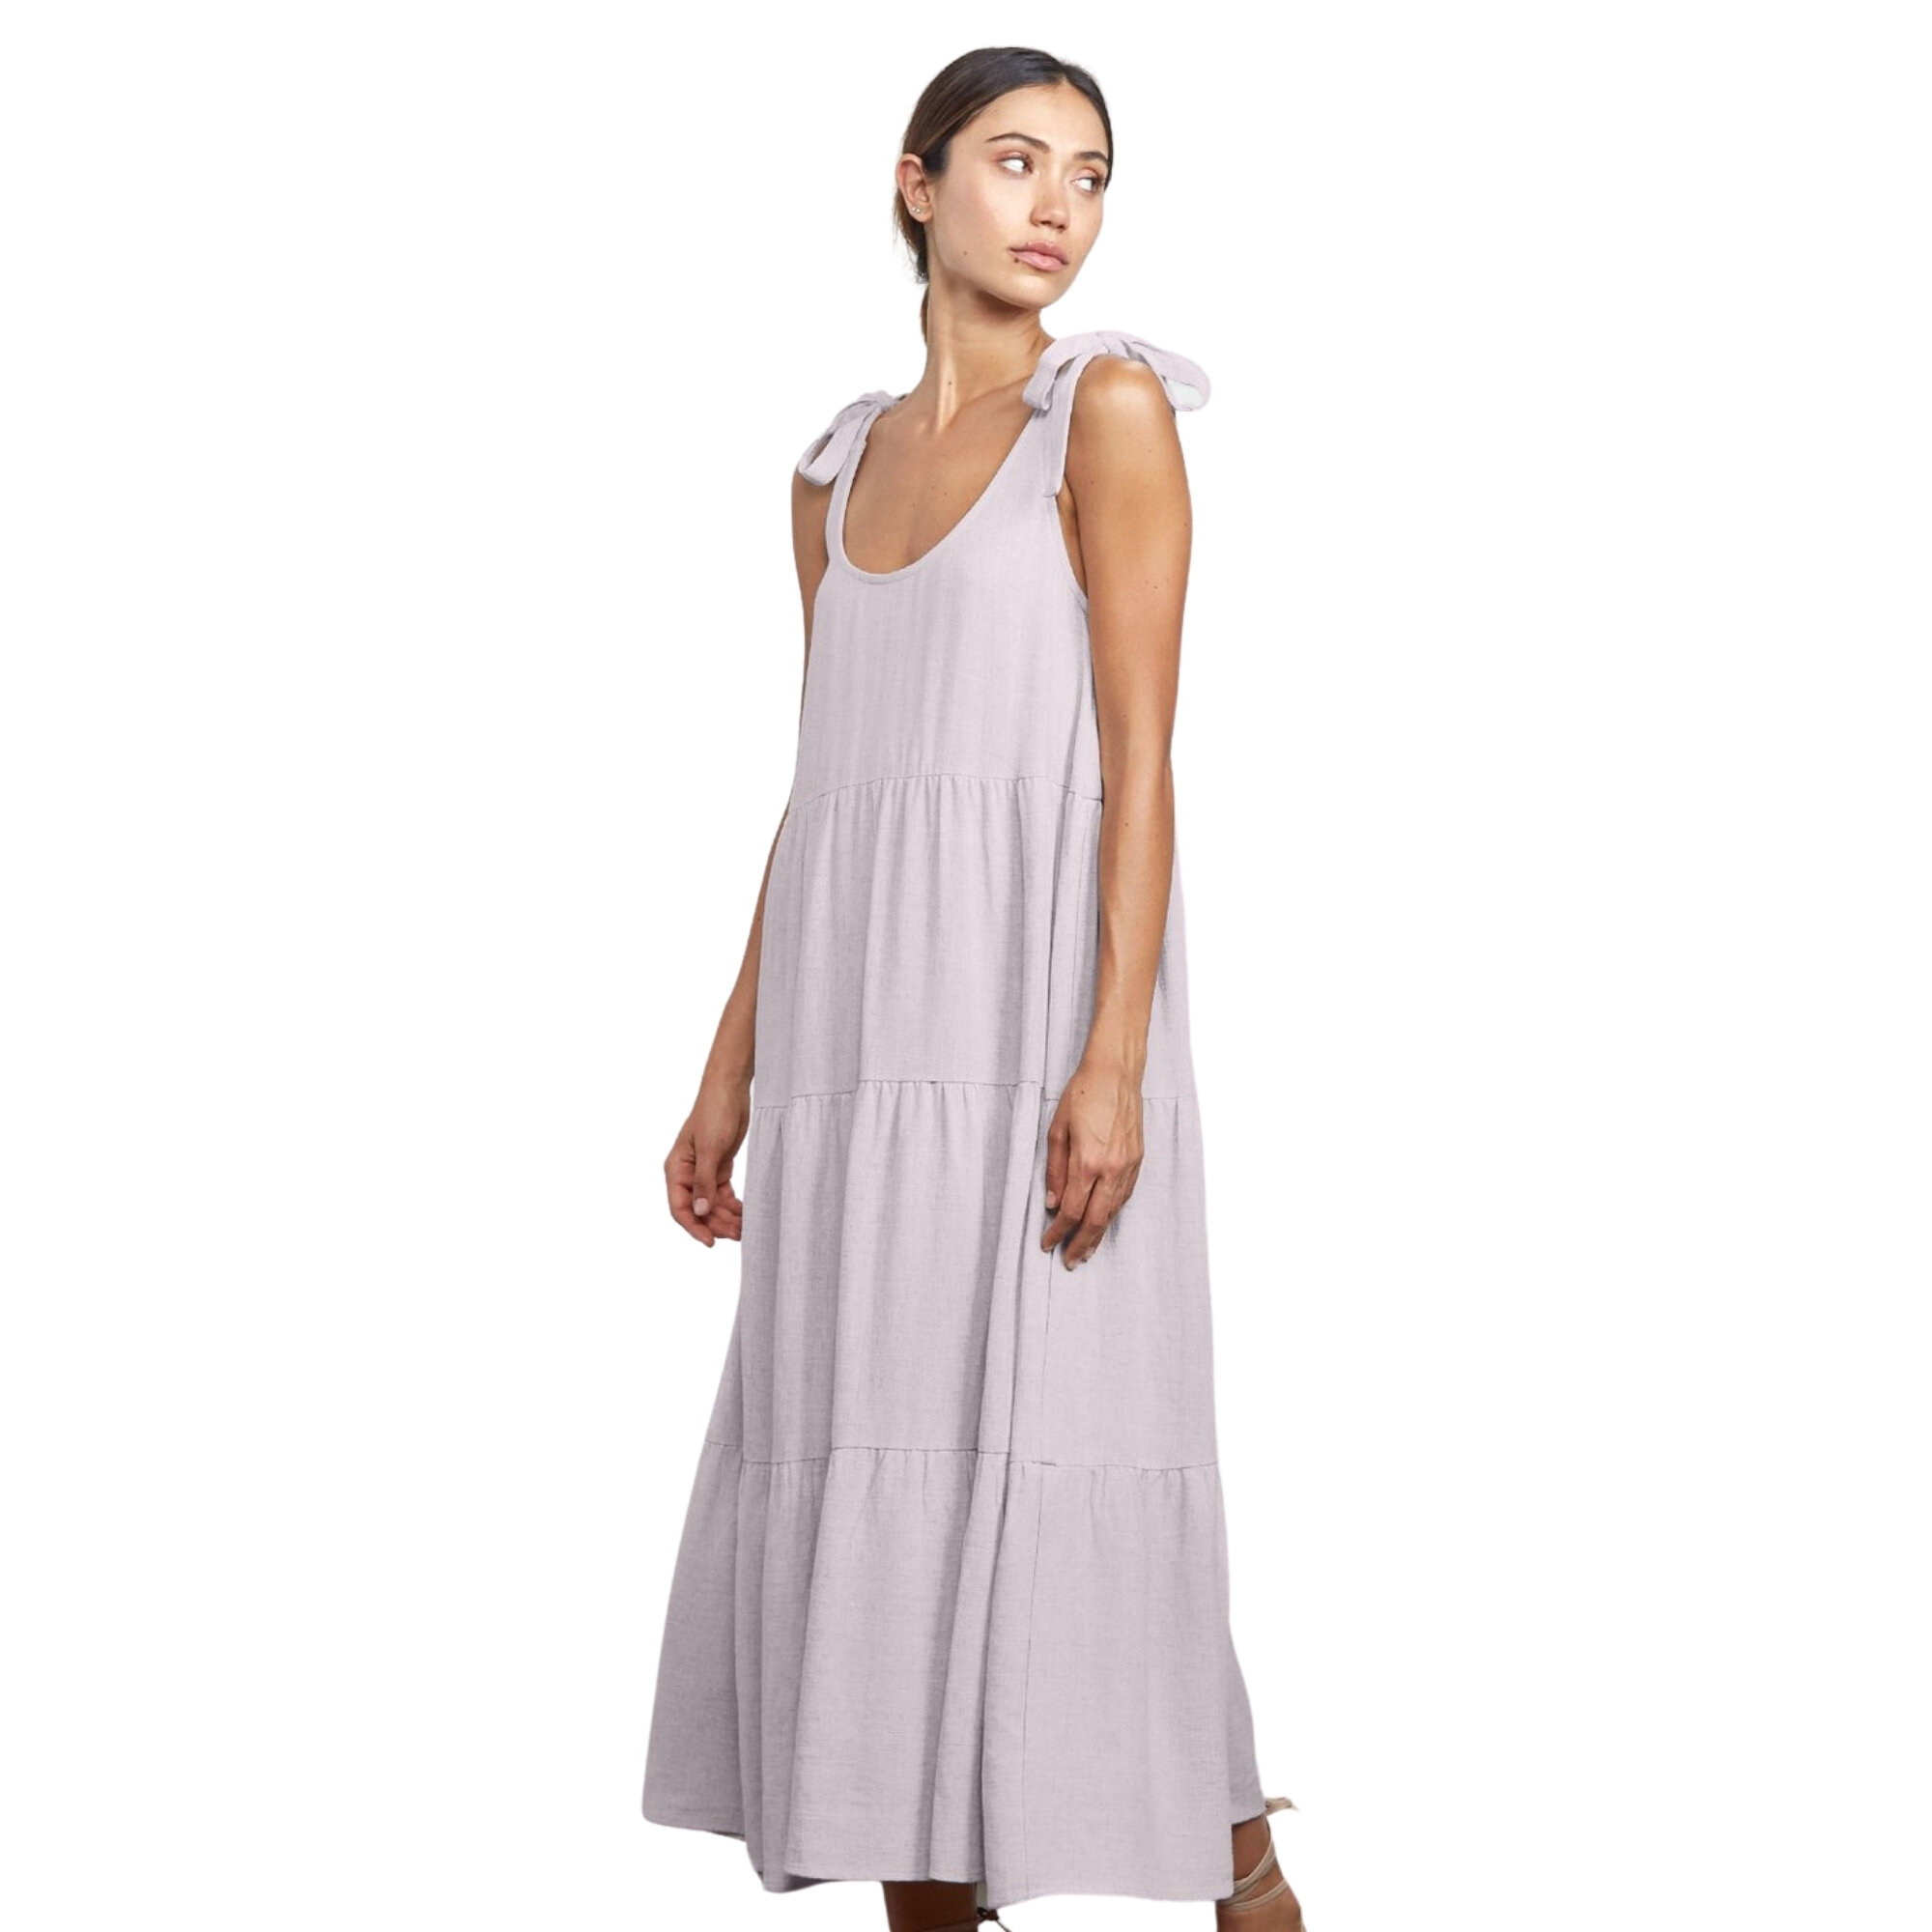 Linen Adelaide Dress, Rachel Pally, $268